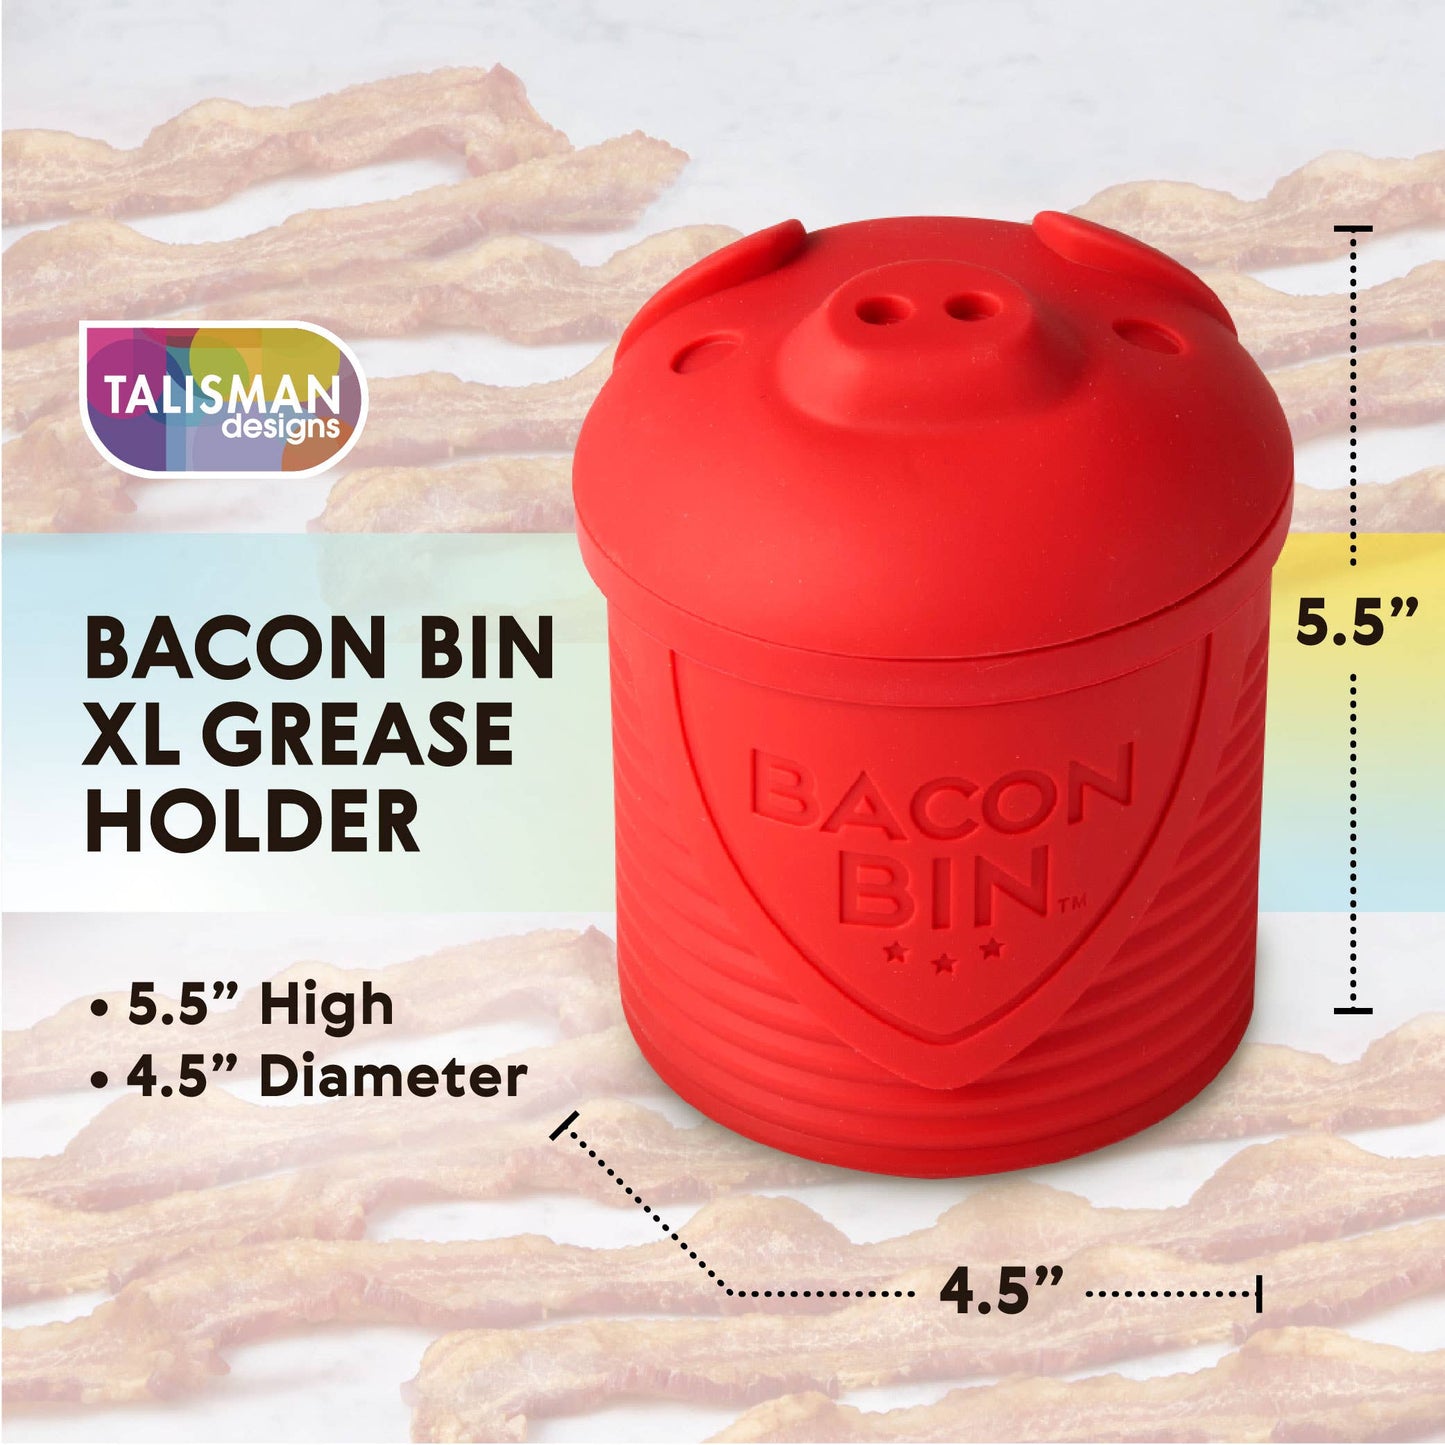 Bacon Bin XL Grease Holder